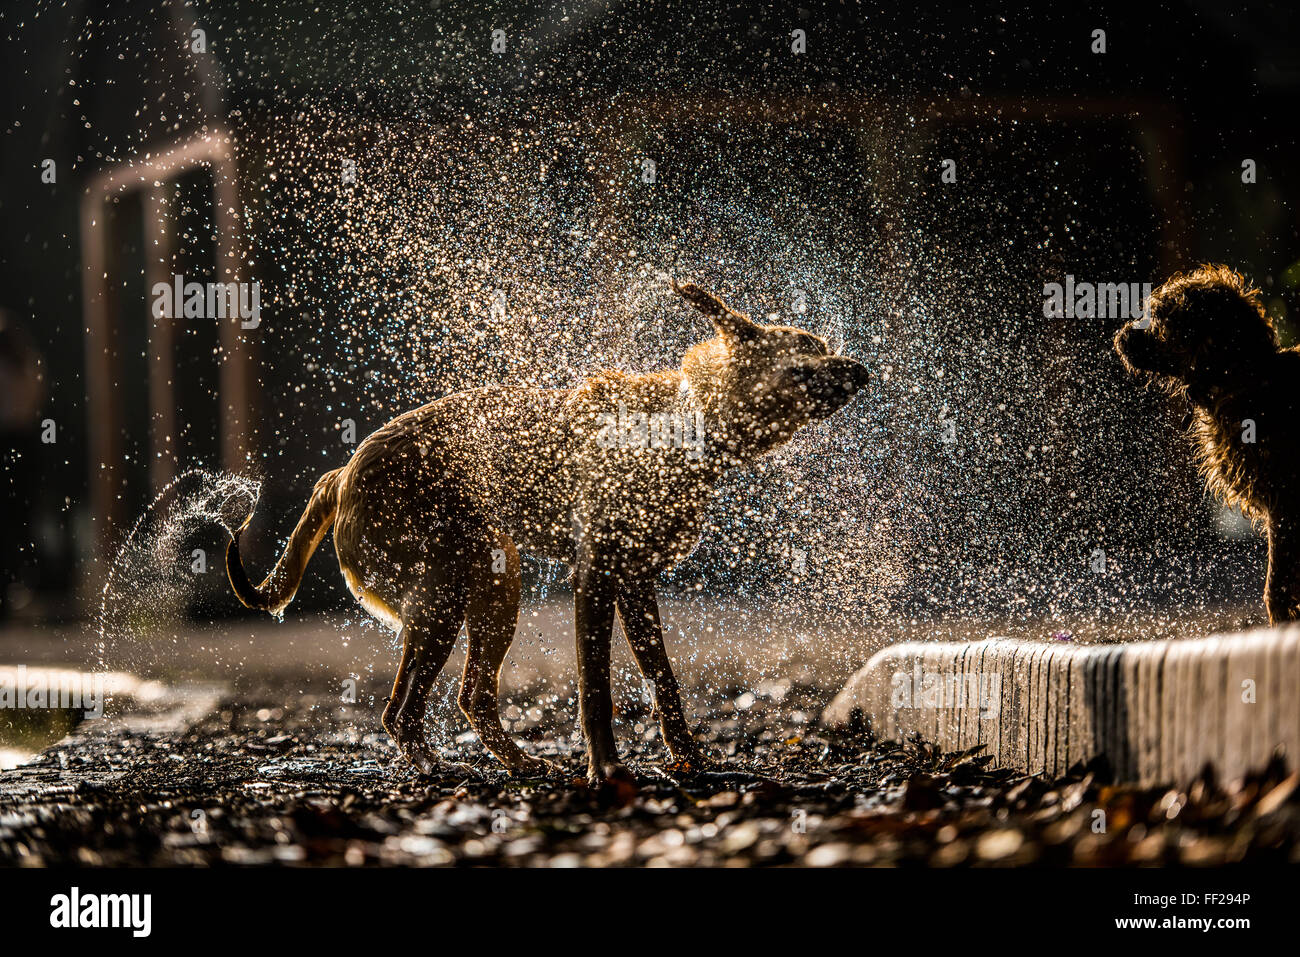 Golden labrador secouer l'eau dans Battersea Park, Londres, Angleterre, Royaume-Uni, Europe Banque D'Images